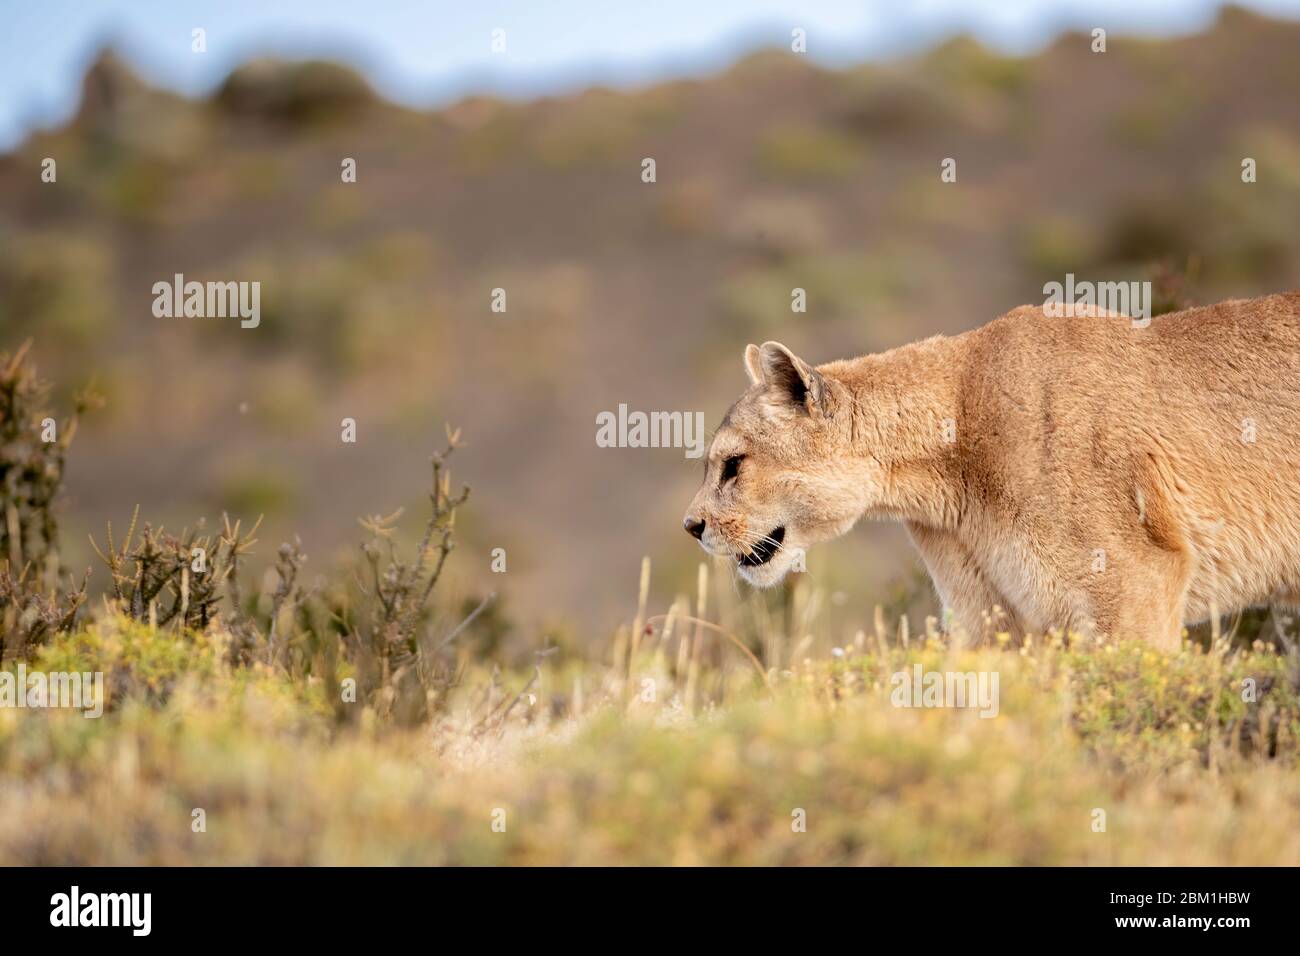 Alleinstehende Erwachsene weibliche puma in hellem Sonnenlicht durch das Gras zu Fuß. Auch bekannt als Cougar oder Berglöwe. Stockfoto